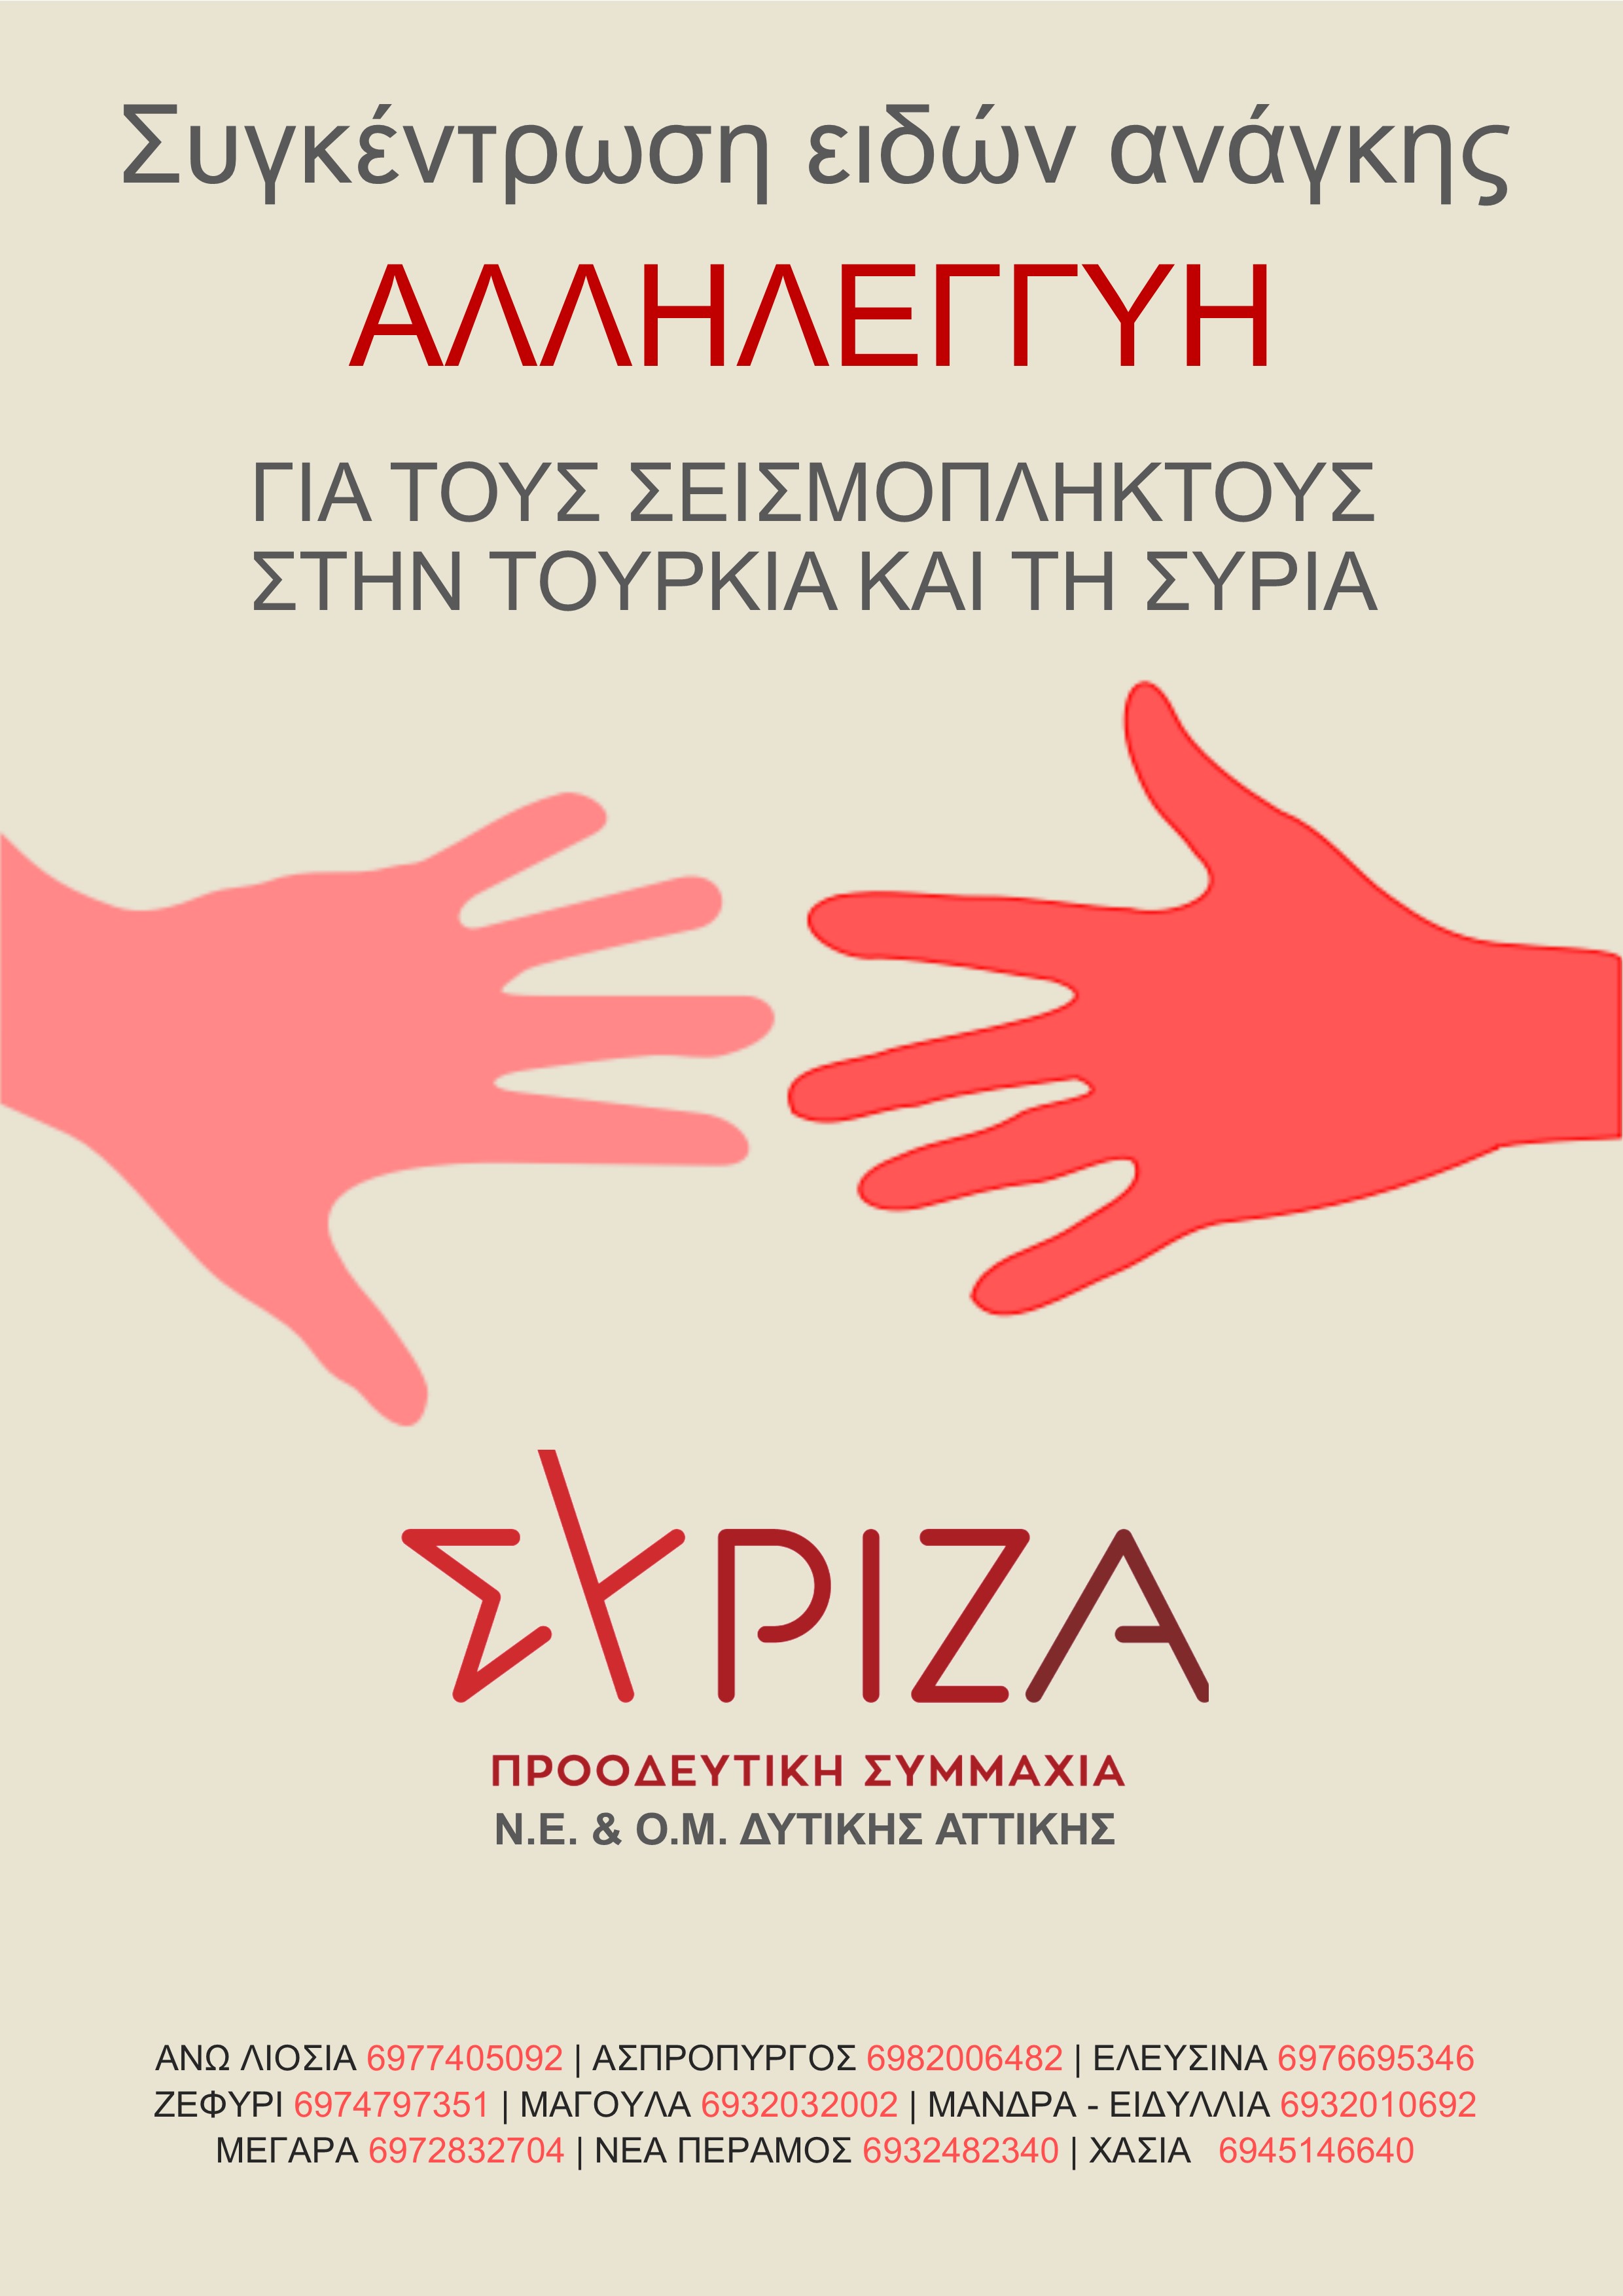 ΣΥΡΙΖΑ – ΠΣ Δυτικής Αττικής : Δράση αλληλεγγύης  στους σεισμόπληκτους της Τουρκίας και της Συρίας